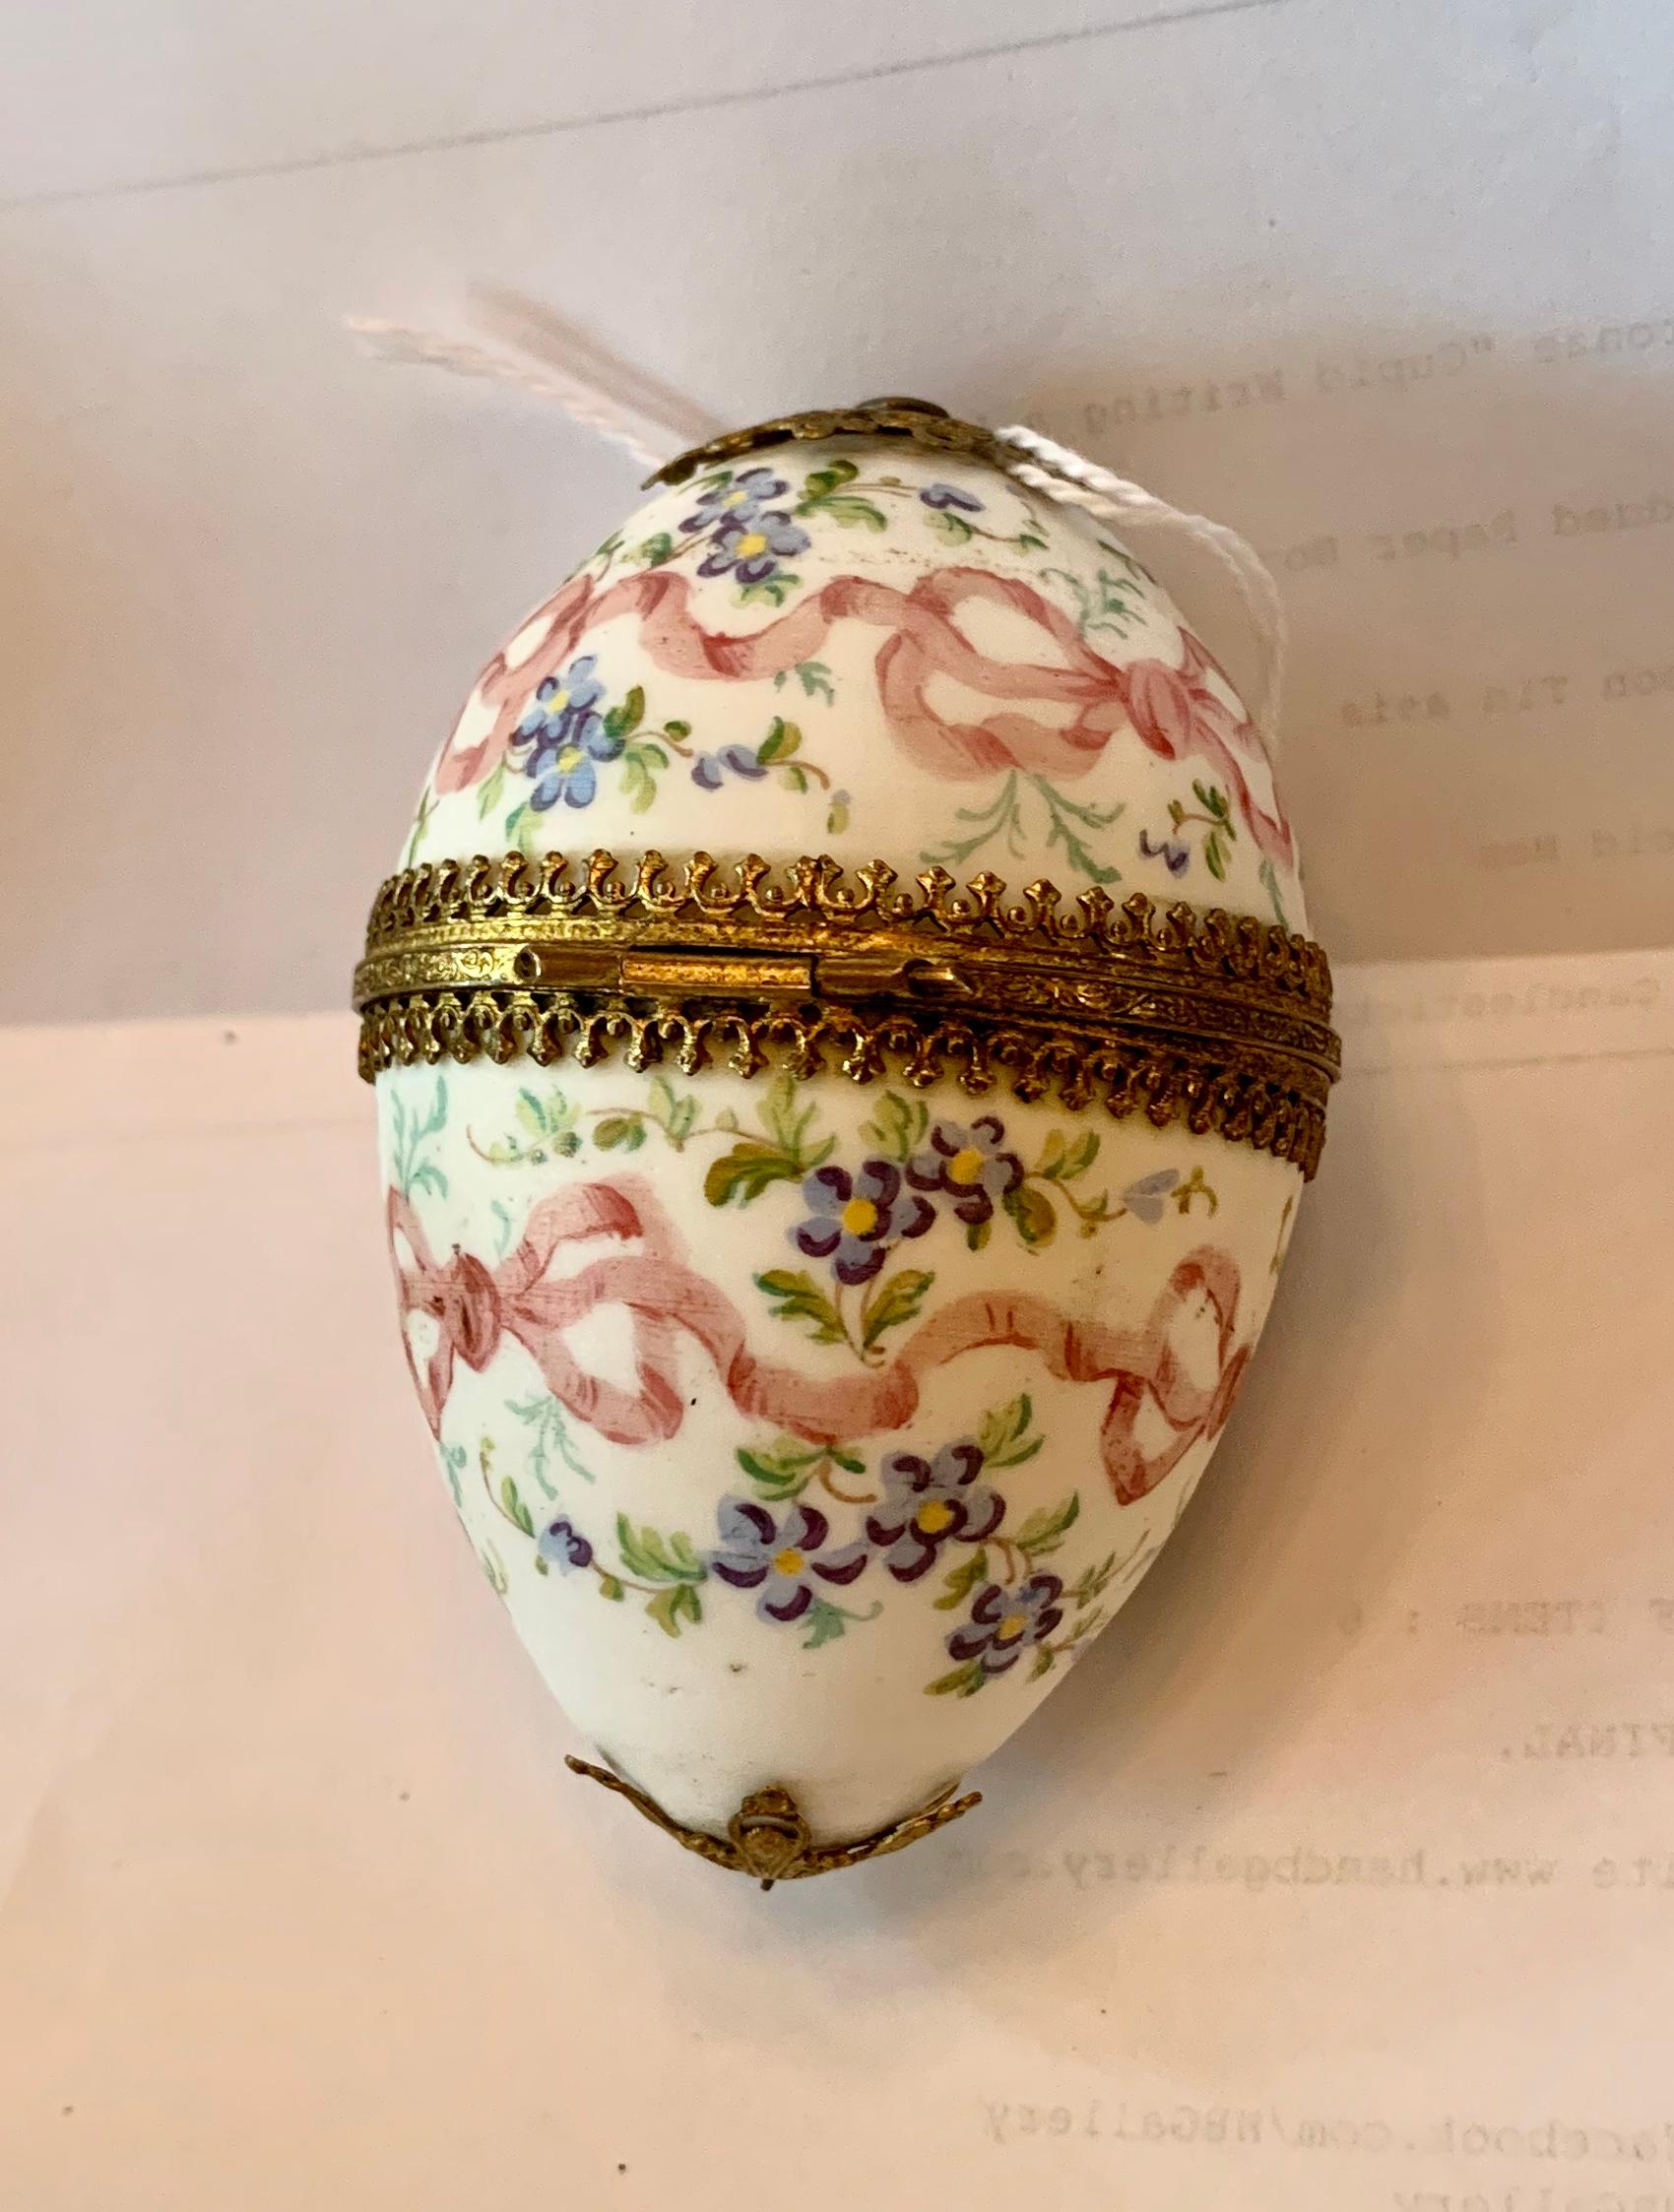 Il s'agit d'une superbe boîte à œufs française ancienne de la Belle Epoque - Victorienne en porcelaine avec une monture en bronze doré et une décoration peinte à la main de rubans roses et de nœuds avec des fleurs de myosotis.  La délicate boîte à